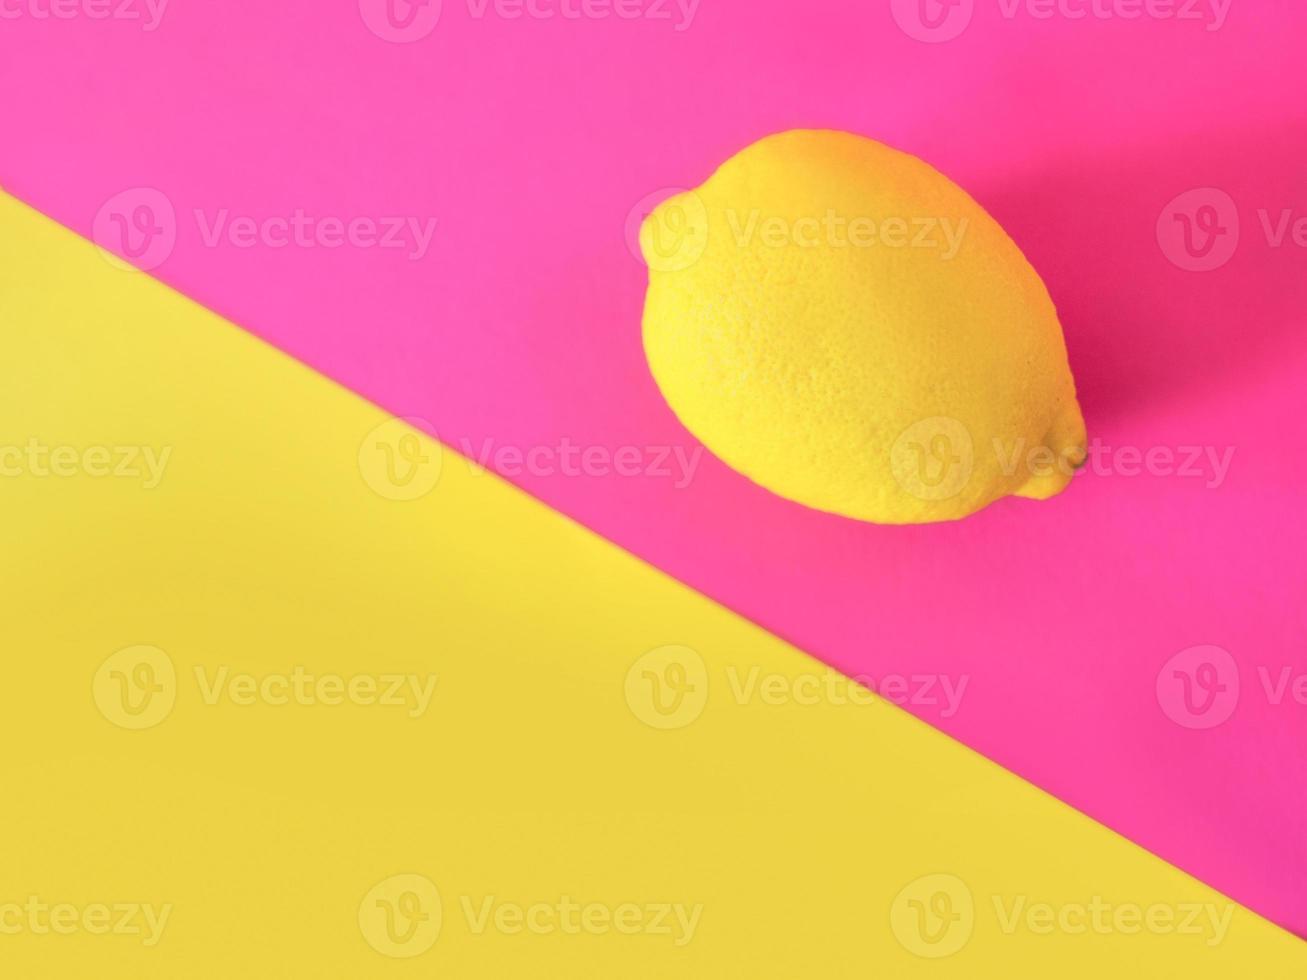 snygg gul citron på rosa och gul bakgrund. citrus, sommar, frukt koncept foto